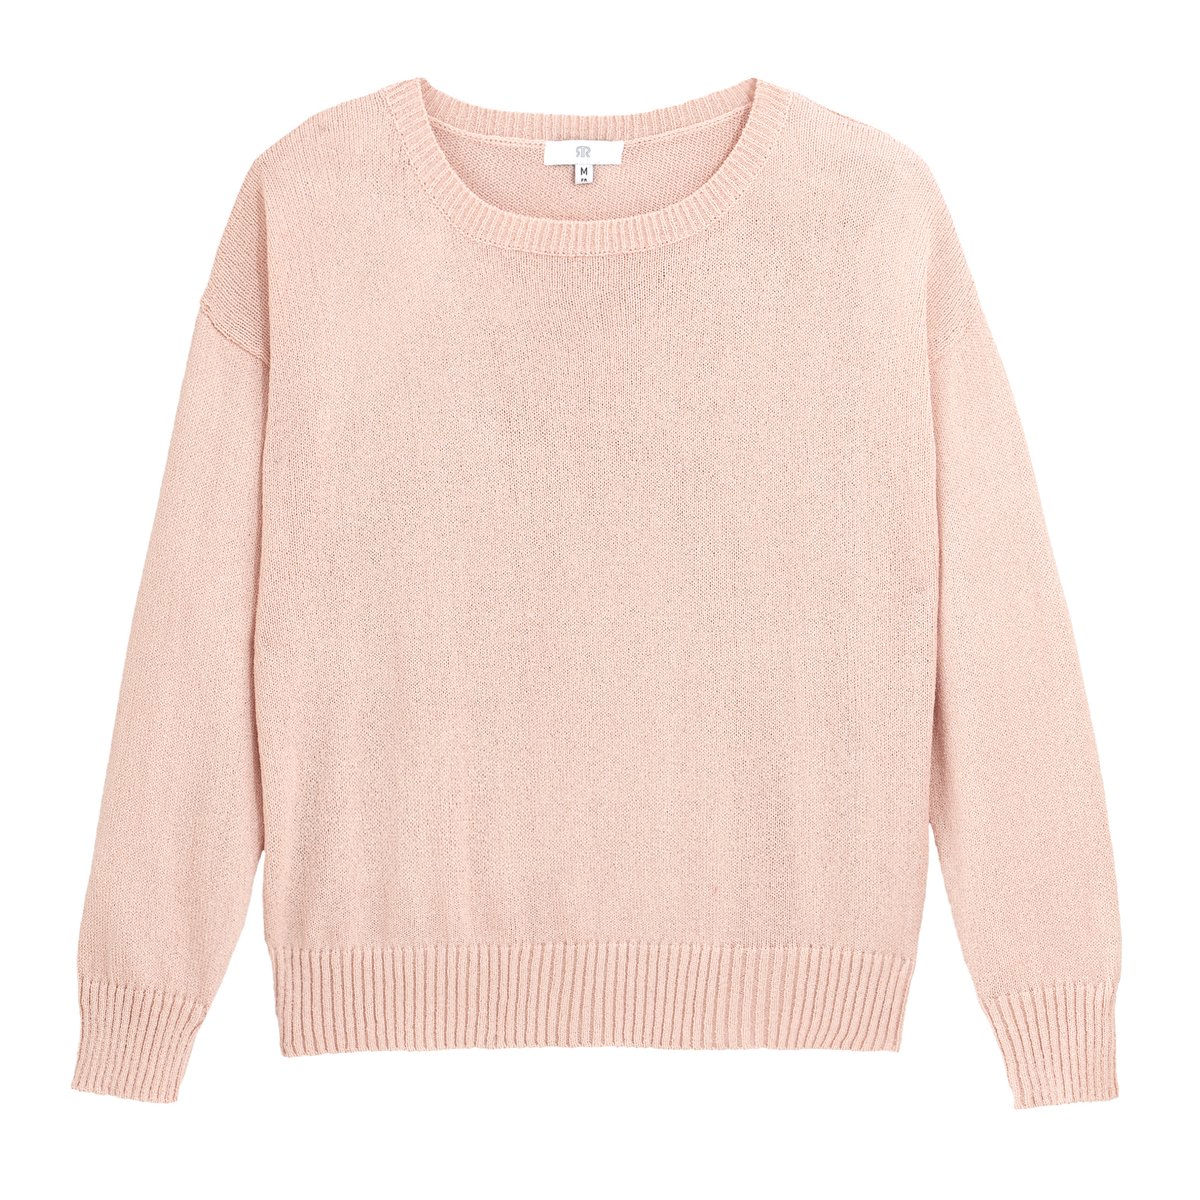 Пуловер La Redoute Широкого покроя с круглым вырезом M розовый, размер M - фото 5